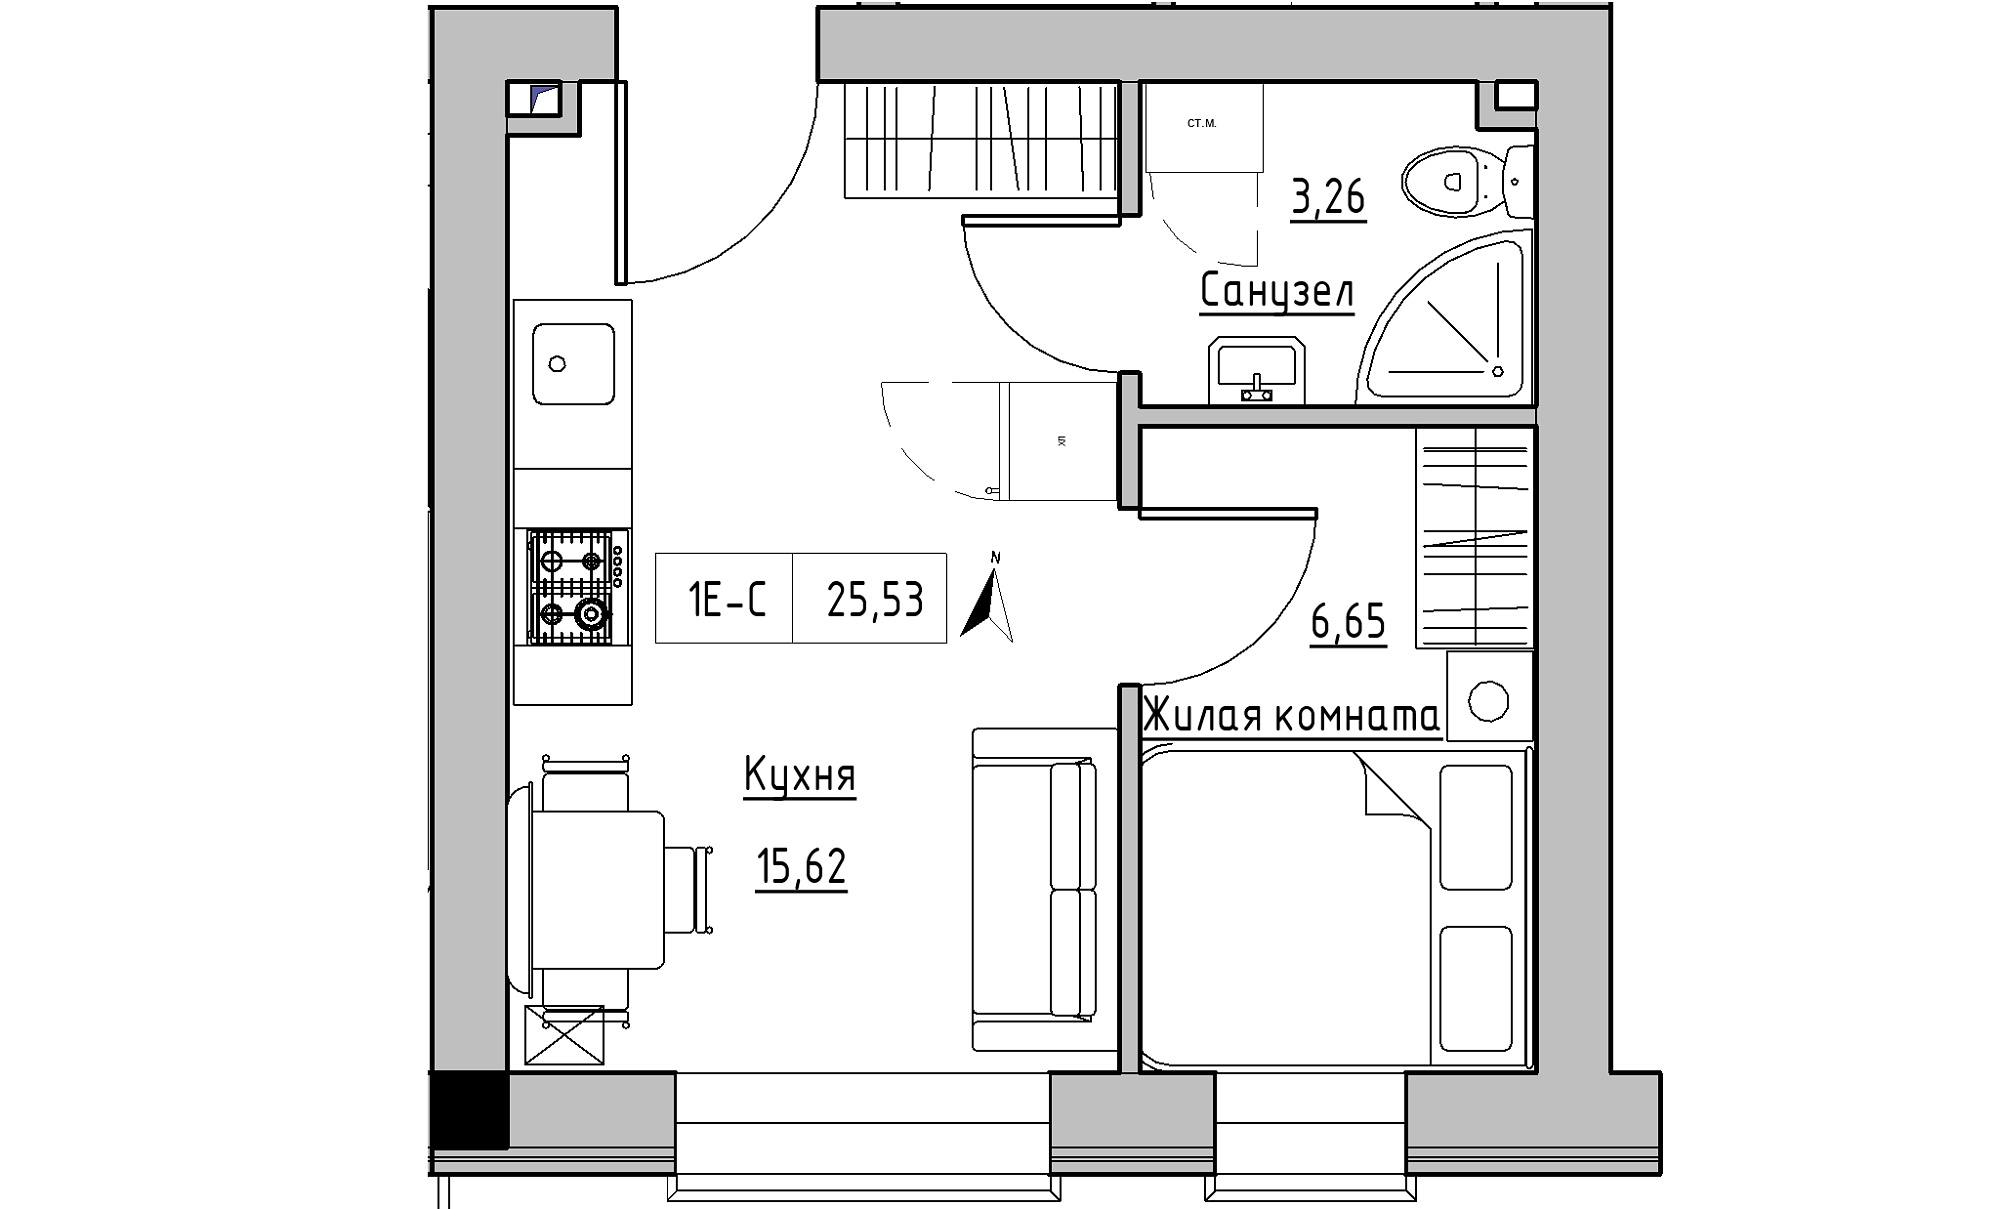 Планування 1-к квартира площею 25.53м2, KS-016-04/0004.